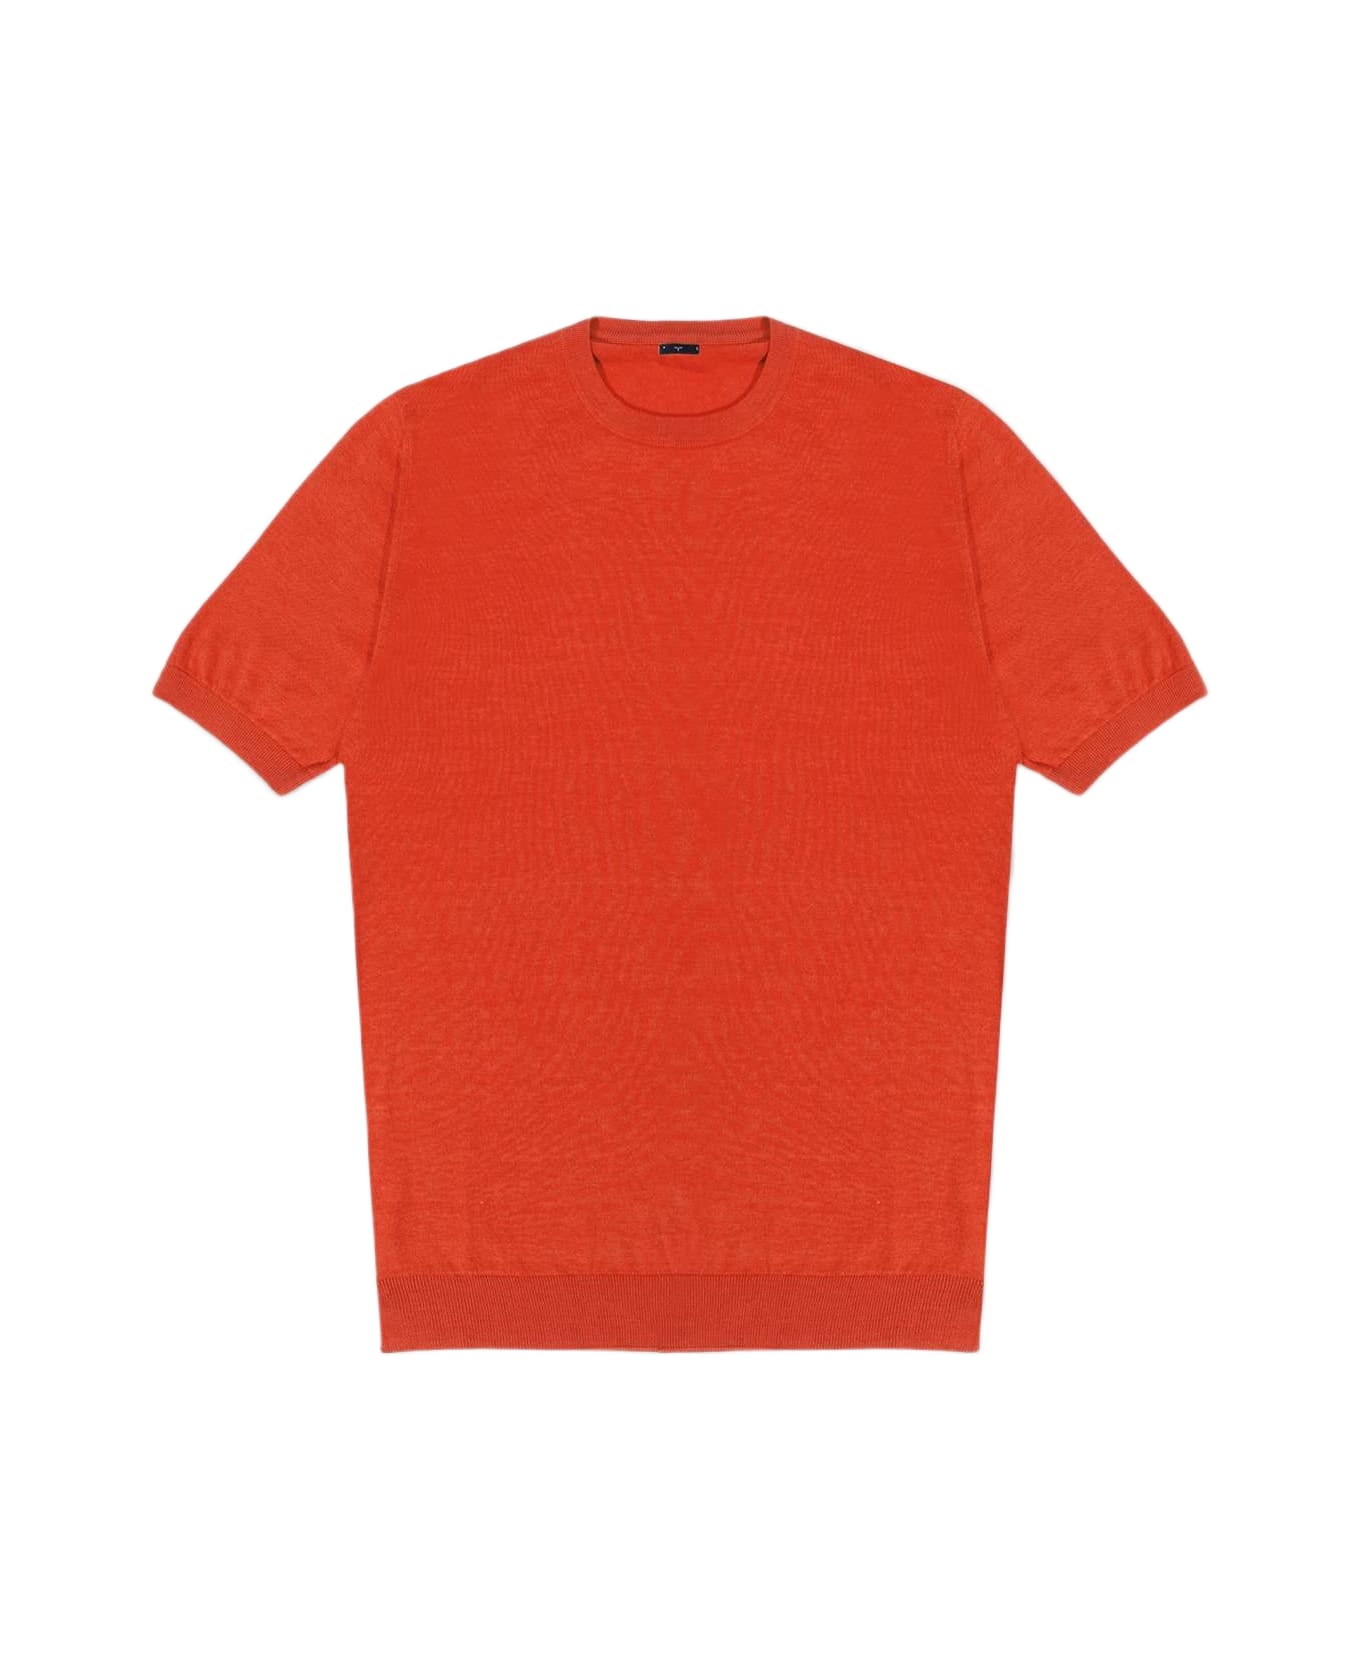 Larusmiani "roquebrune" Crewneck Sweater - Orange